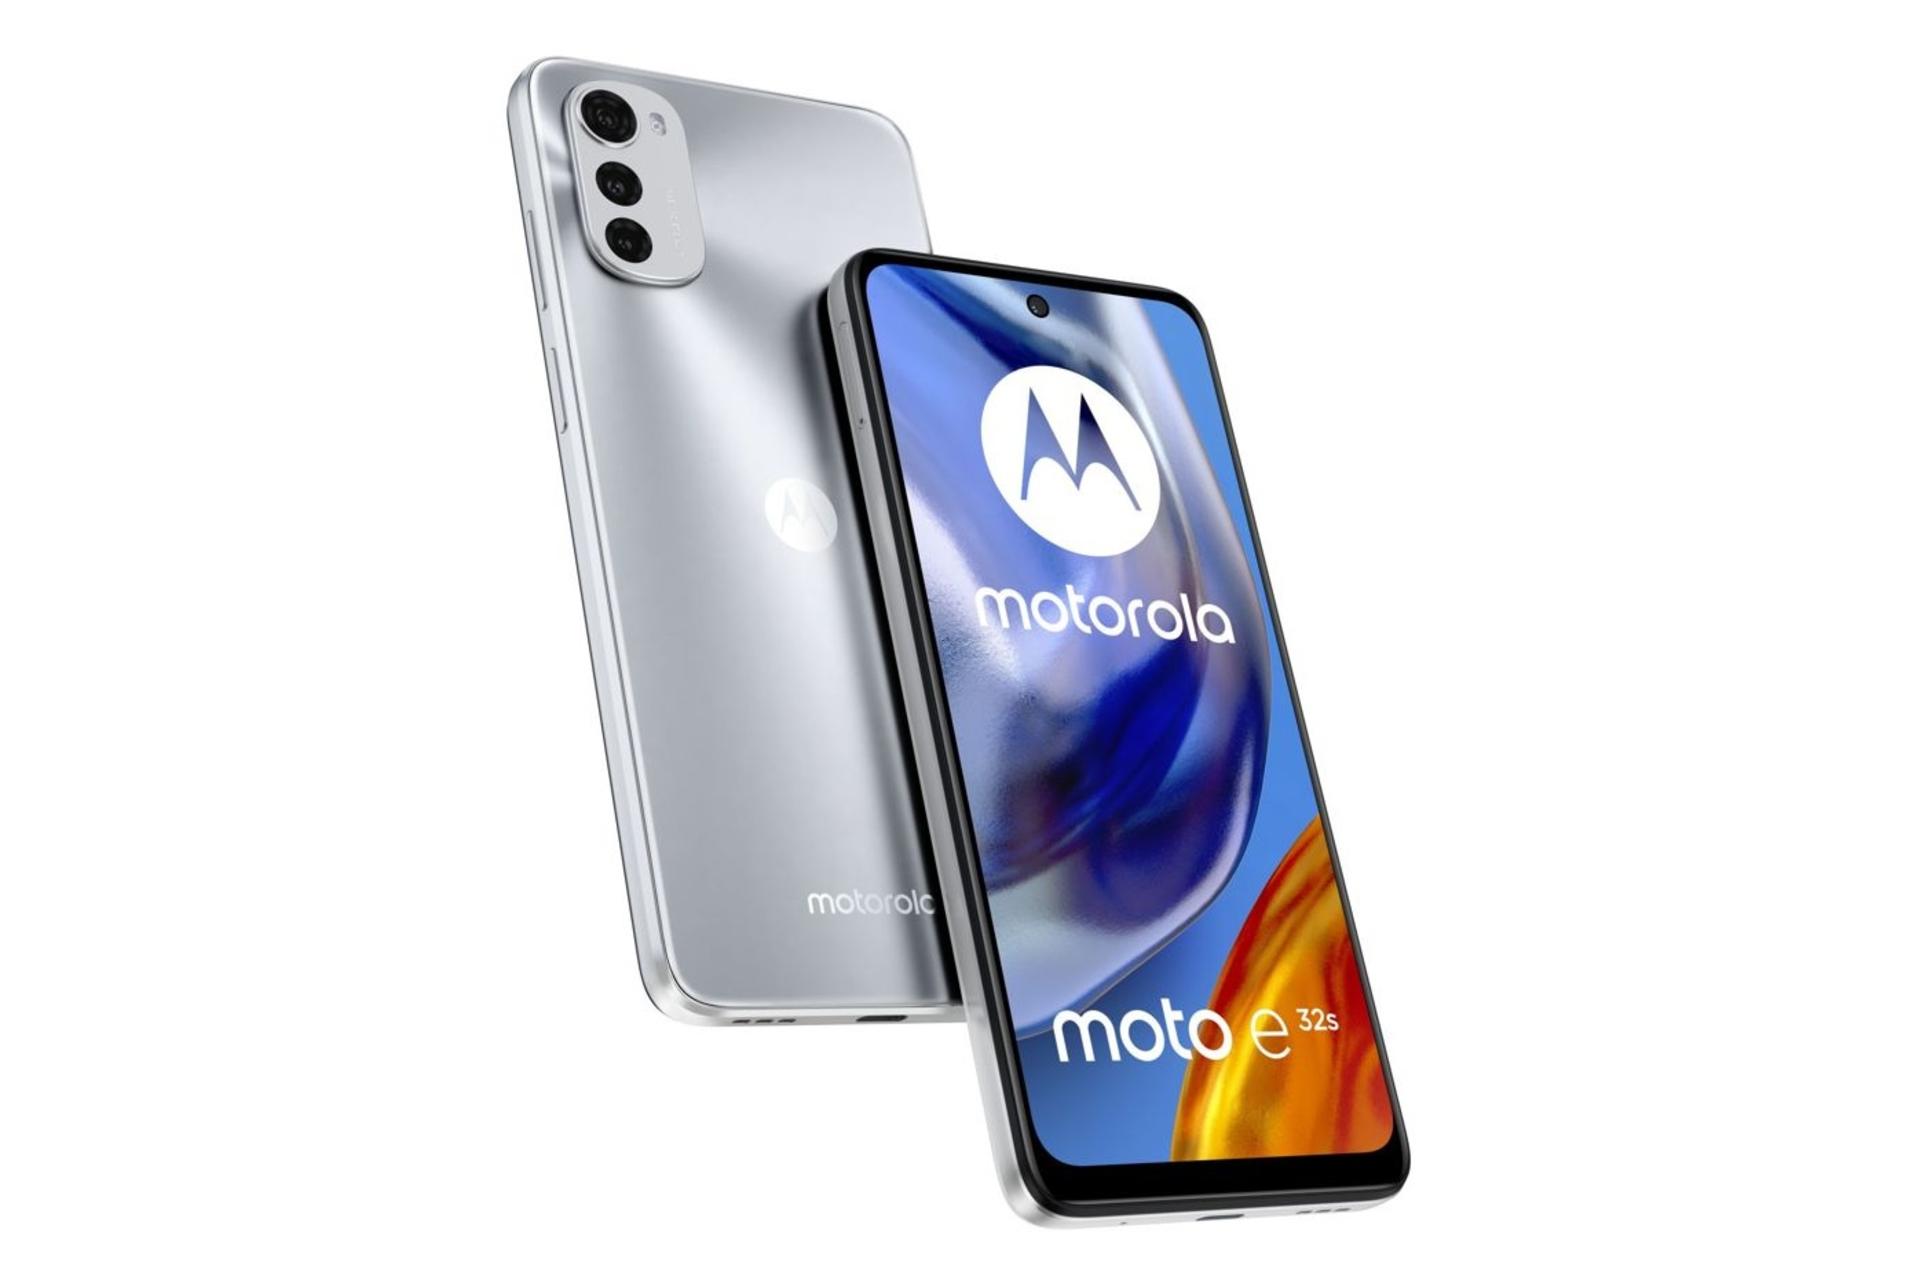 قیمت گوشی موتو E32s موتورولا | Motorola Moto E32s + مشخصات